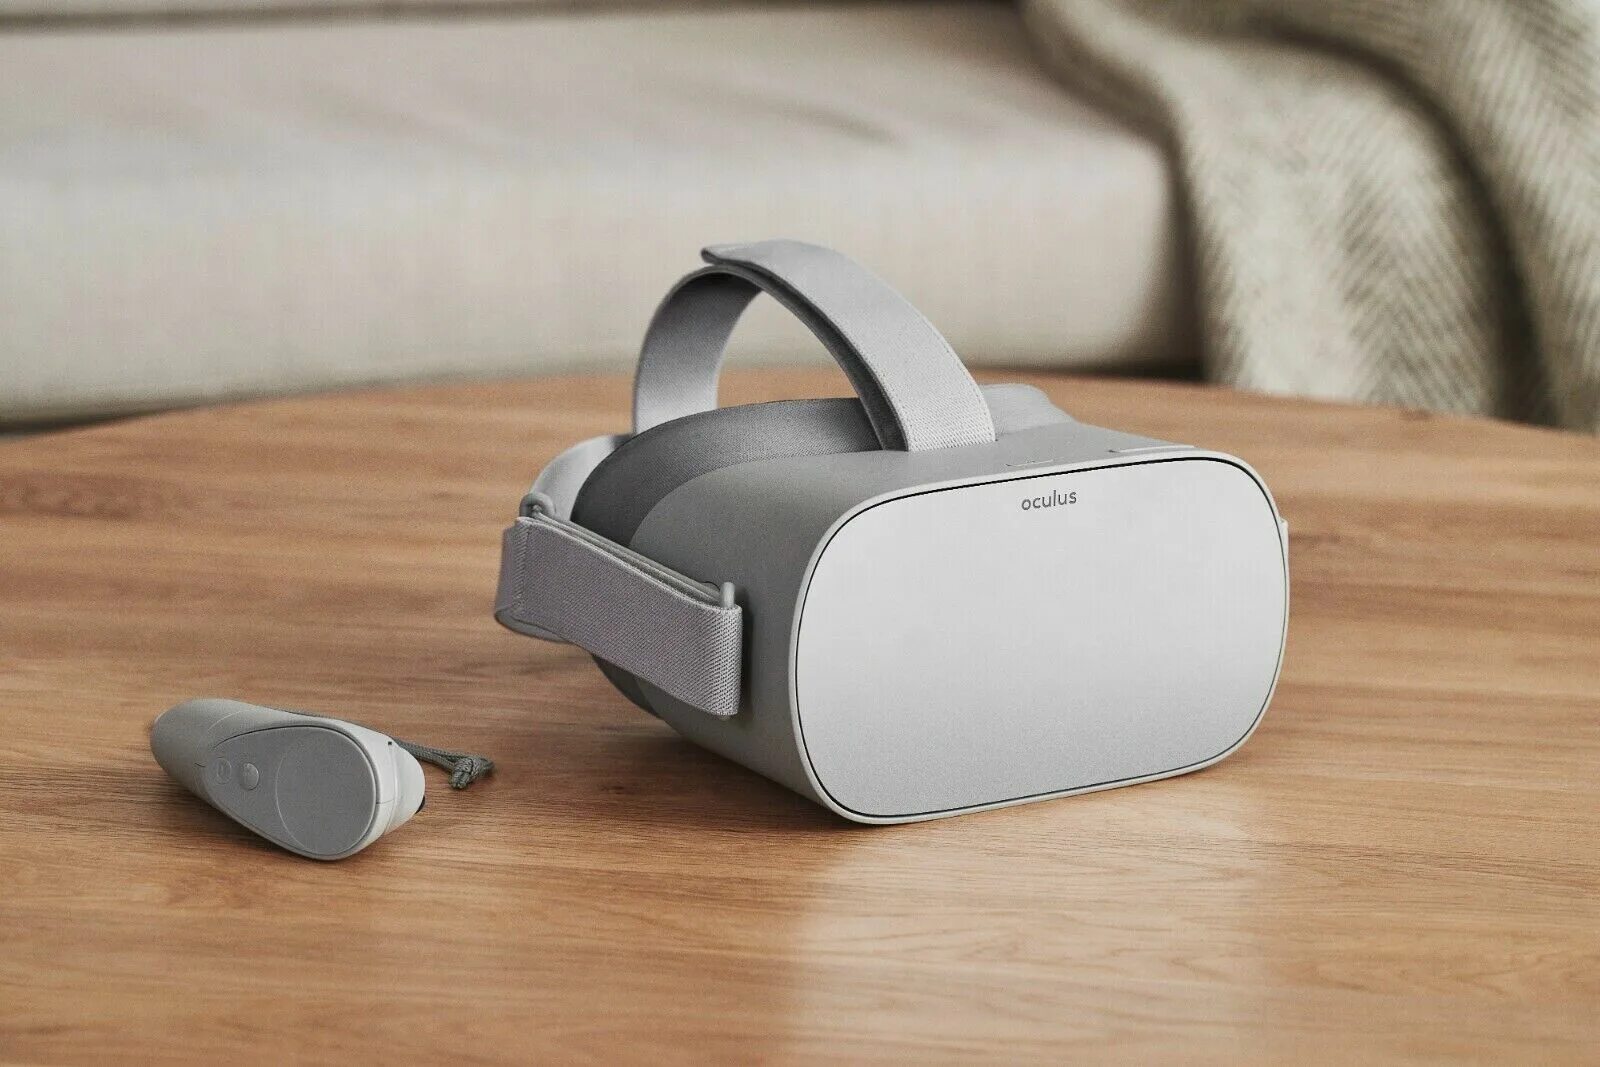 Купить очки окулус. VR очки Oculus go. Очки ВР Oculus 32 ГБ. Шлем виртуальной реальности Oculus go - 32 GB. Шлем виртуальной реальности Xiaomi mi VR Standalone 32gb.